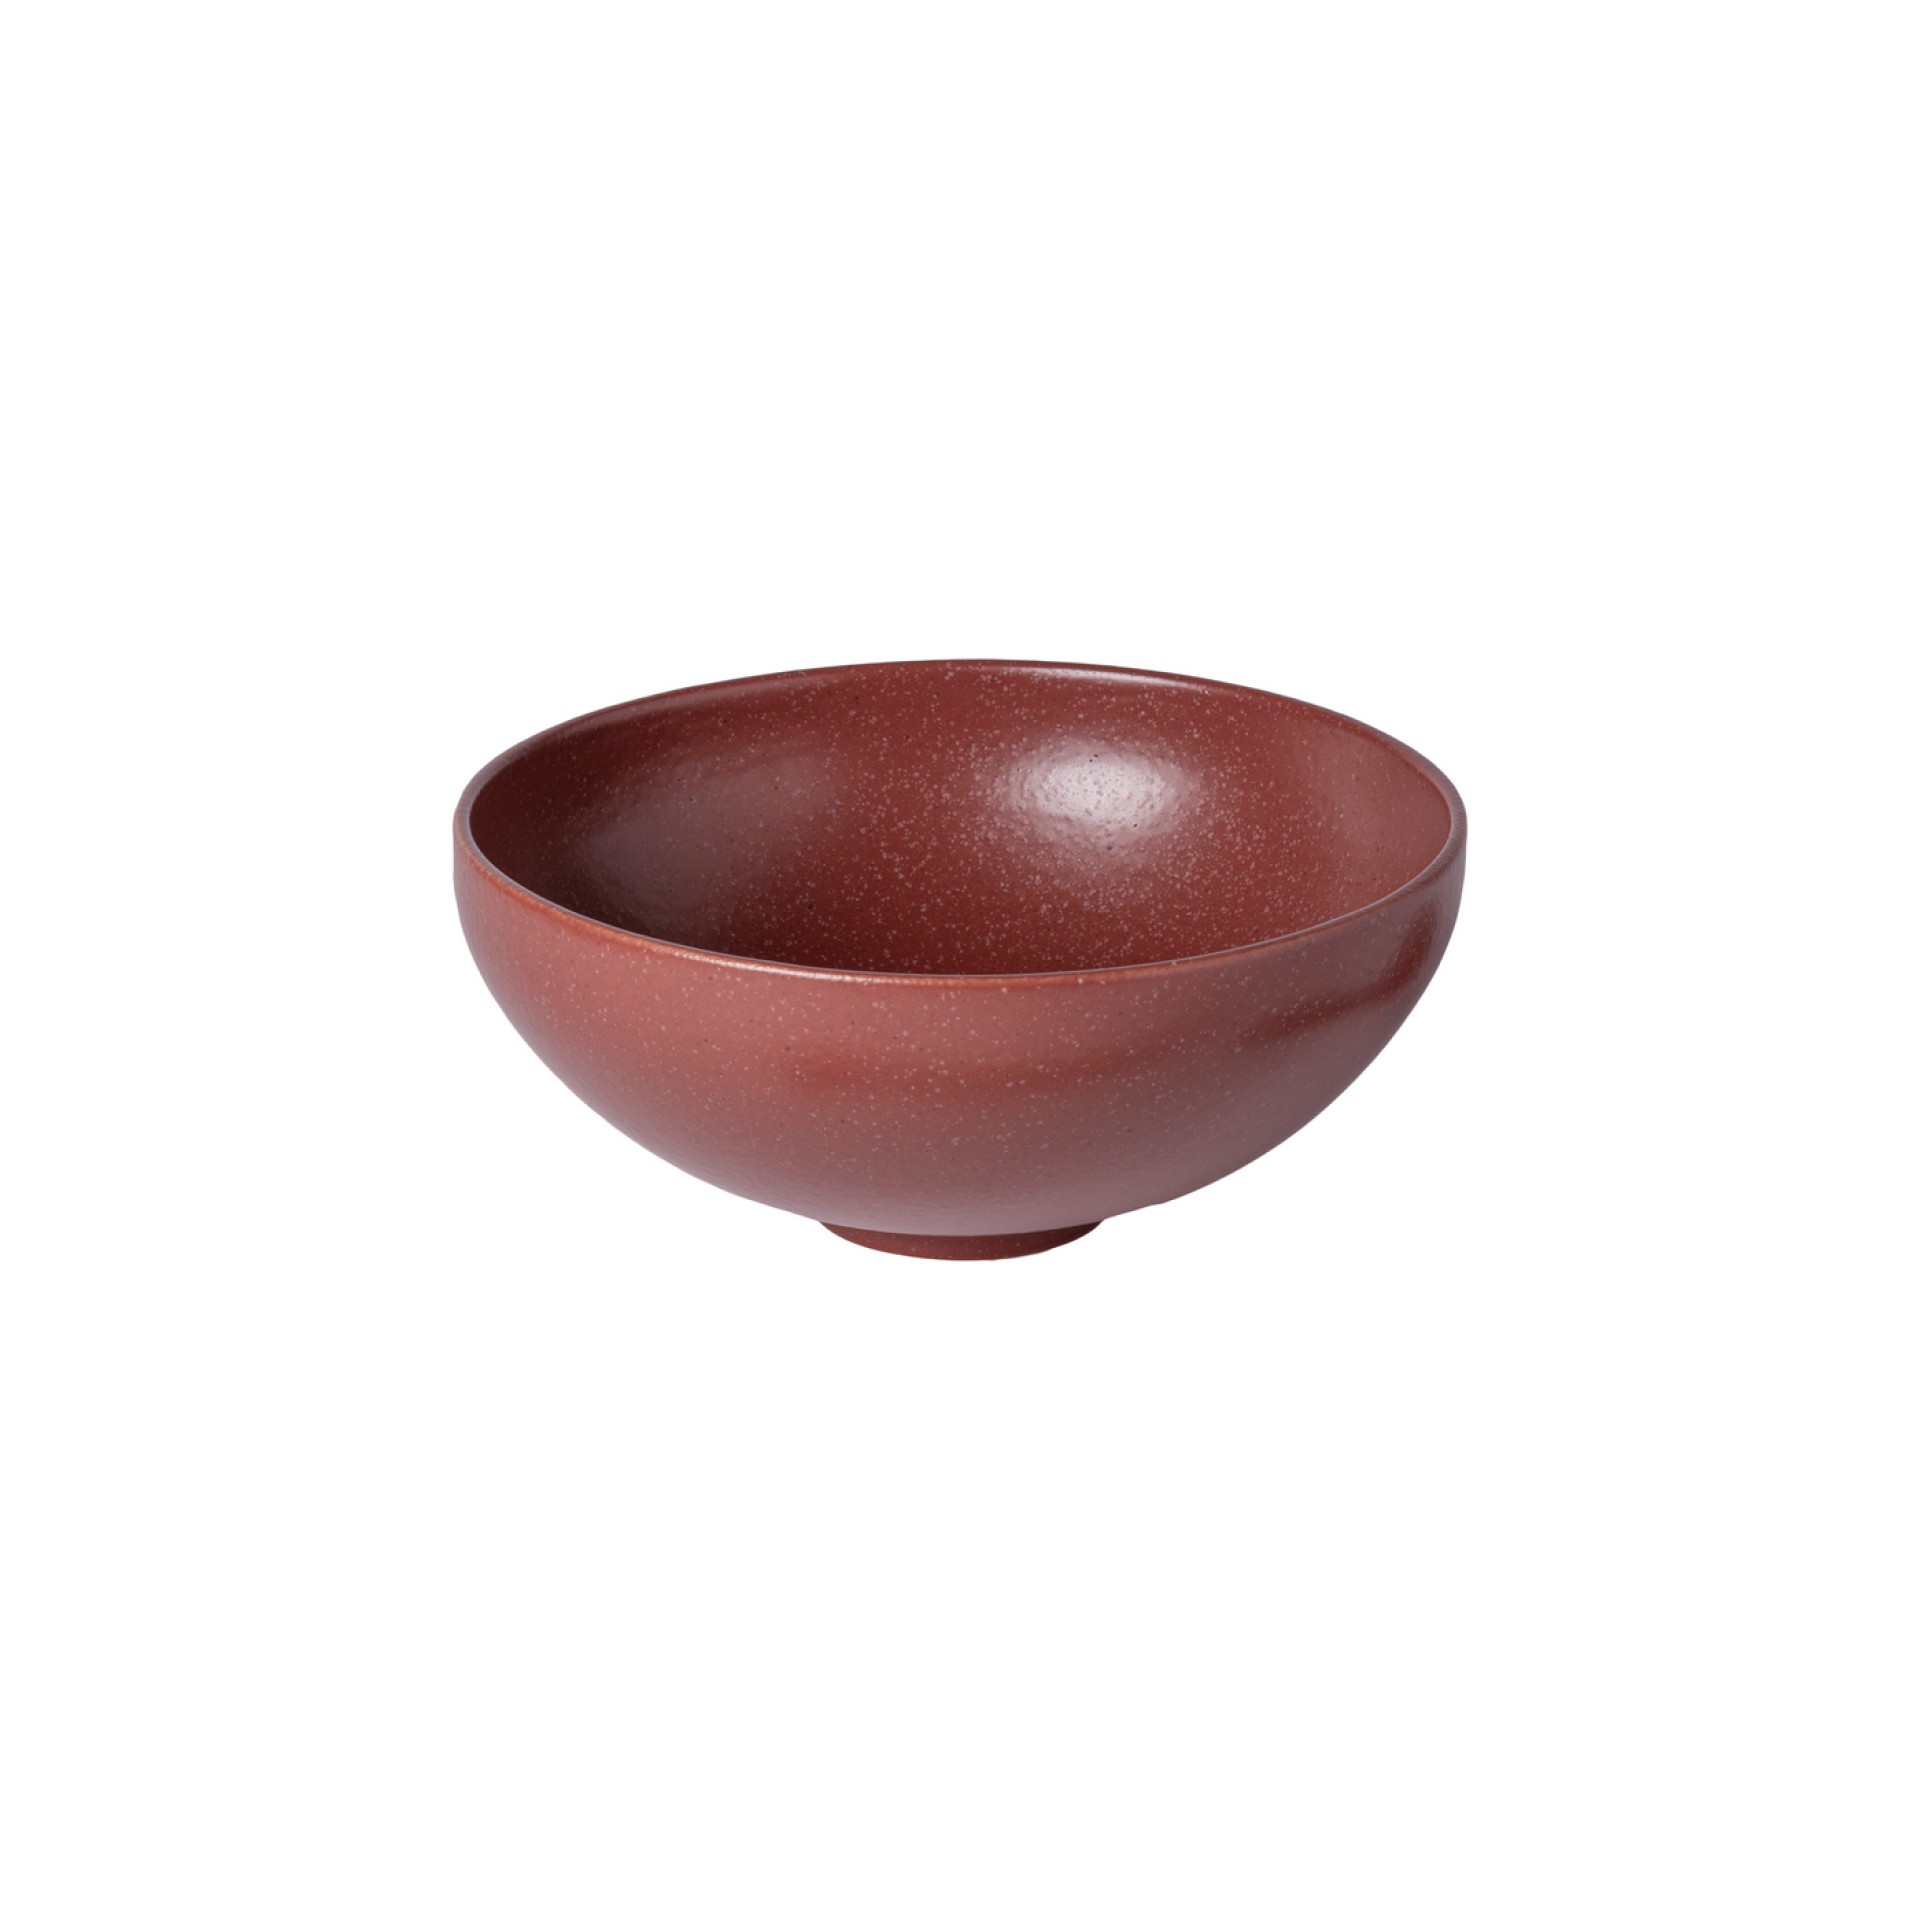 Bowl de Ramen Pacifica by Casafina